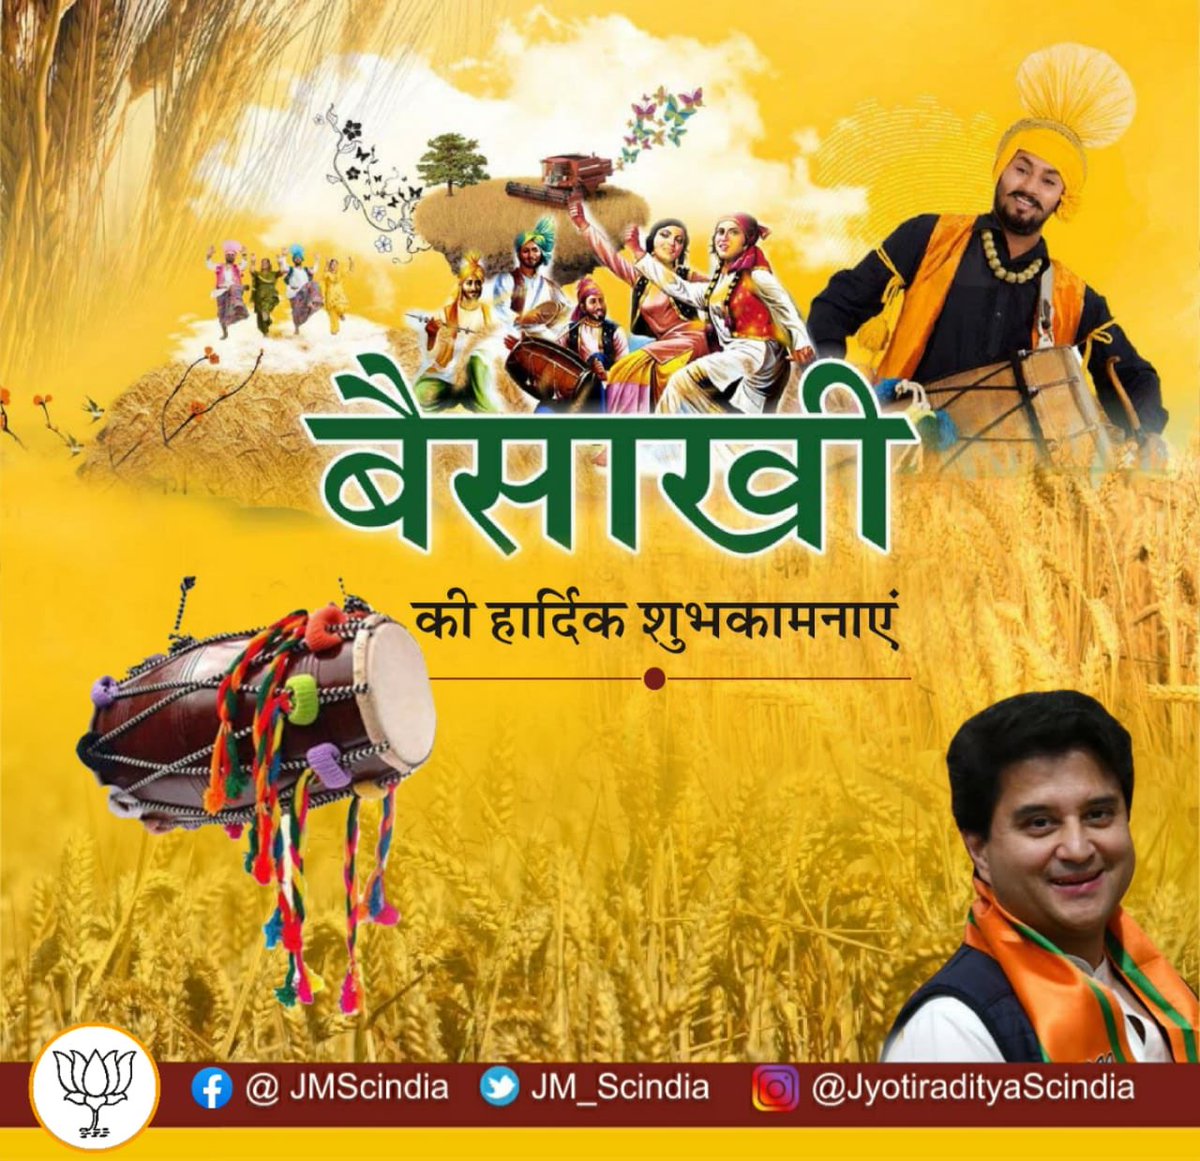 सुख-समृद्धि और अन्नदाताओं की खुशहाली के पर्व बैसाखी की समस्त देशवासियों को हार्दिक बधाई एवं शुभकामनाएं। #Baisakhi